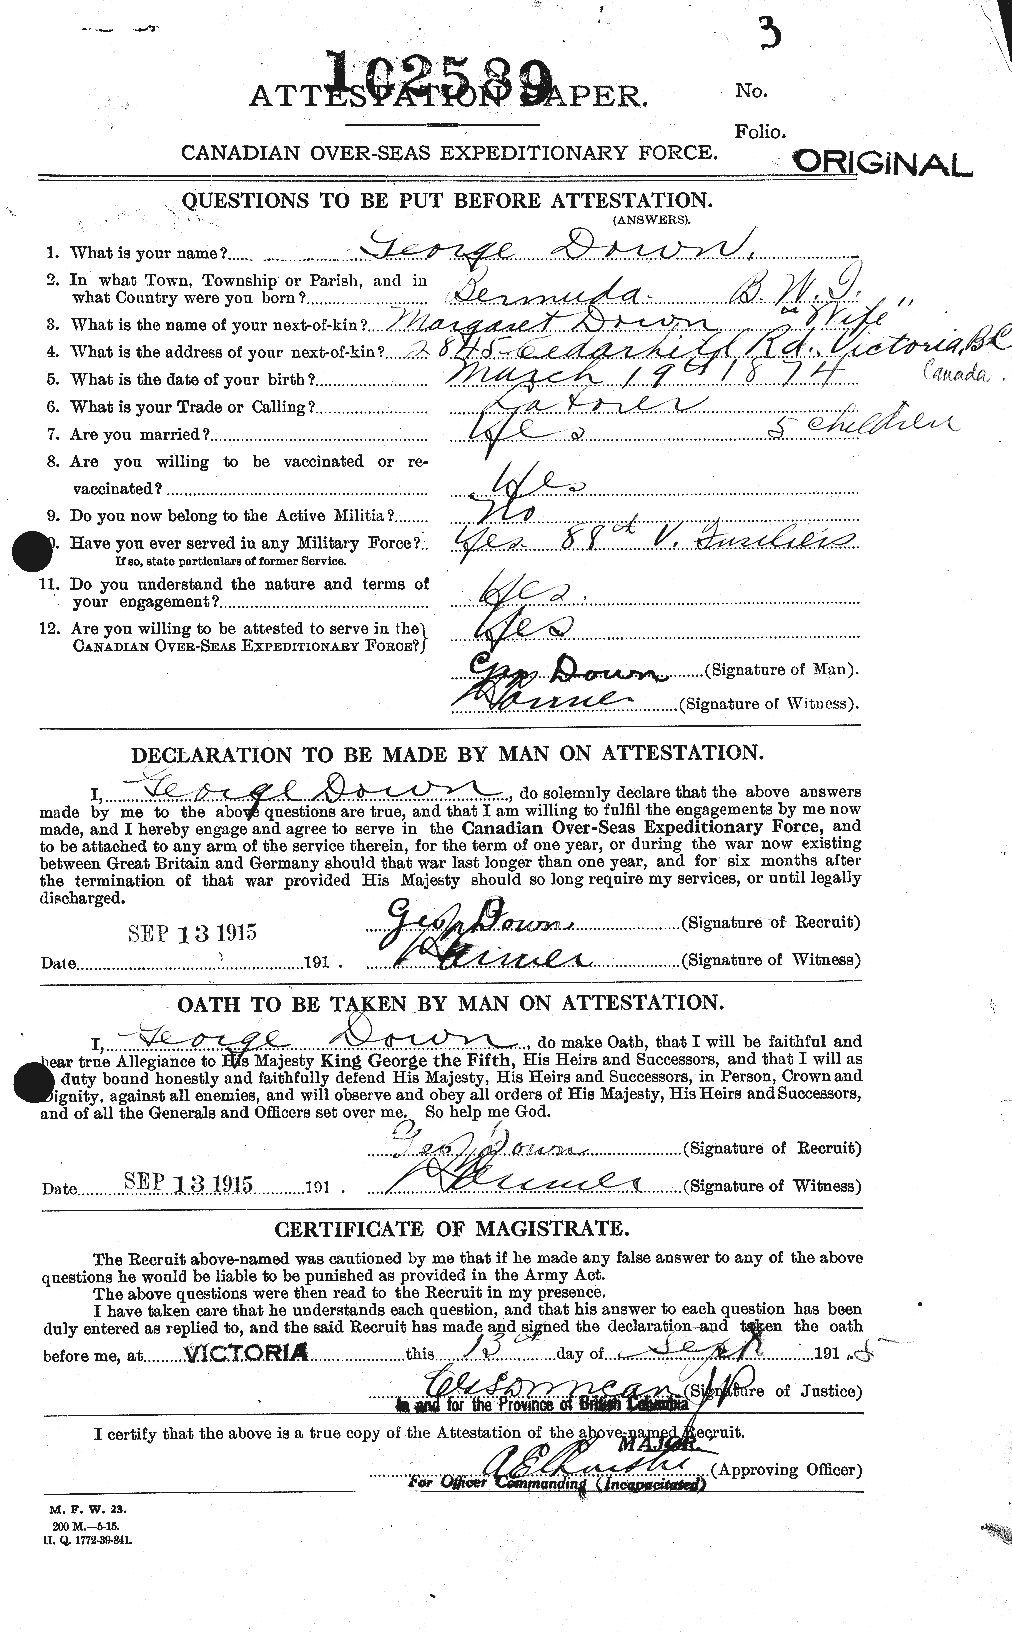 Dossiers du Personnel de la Première Guerre mondiale - CEC 301051a